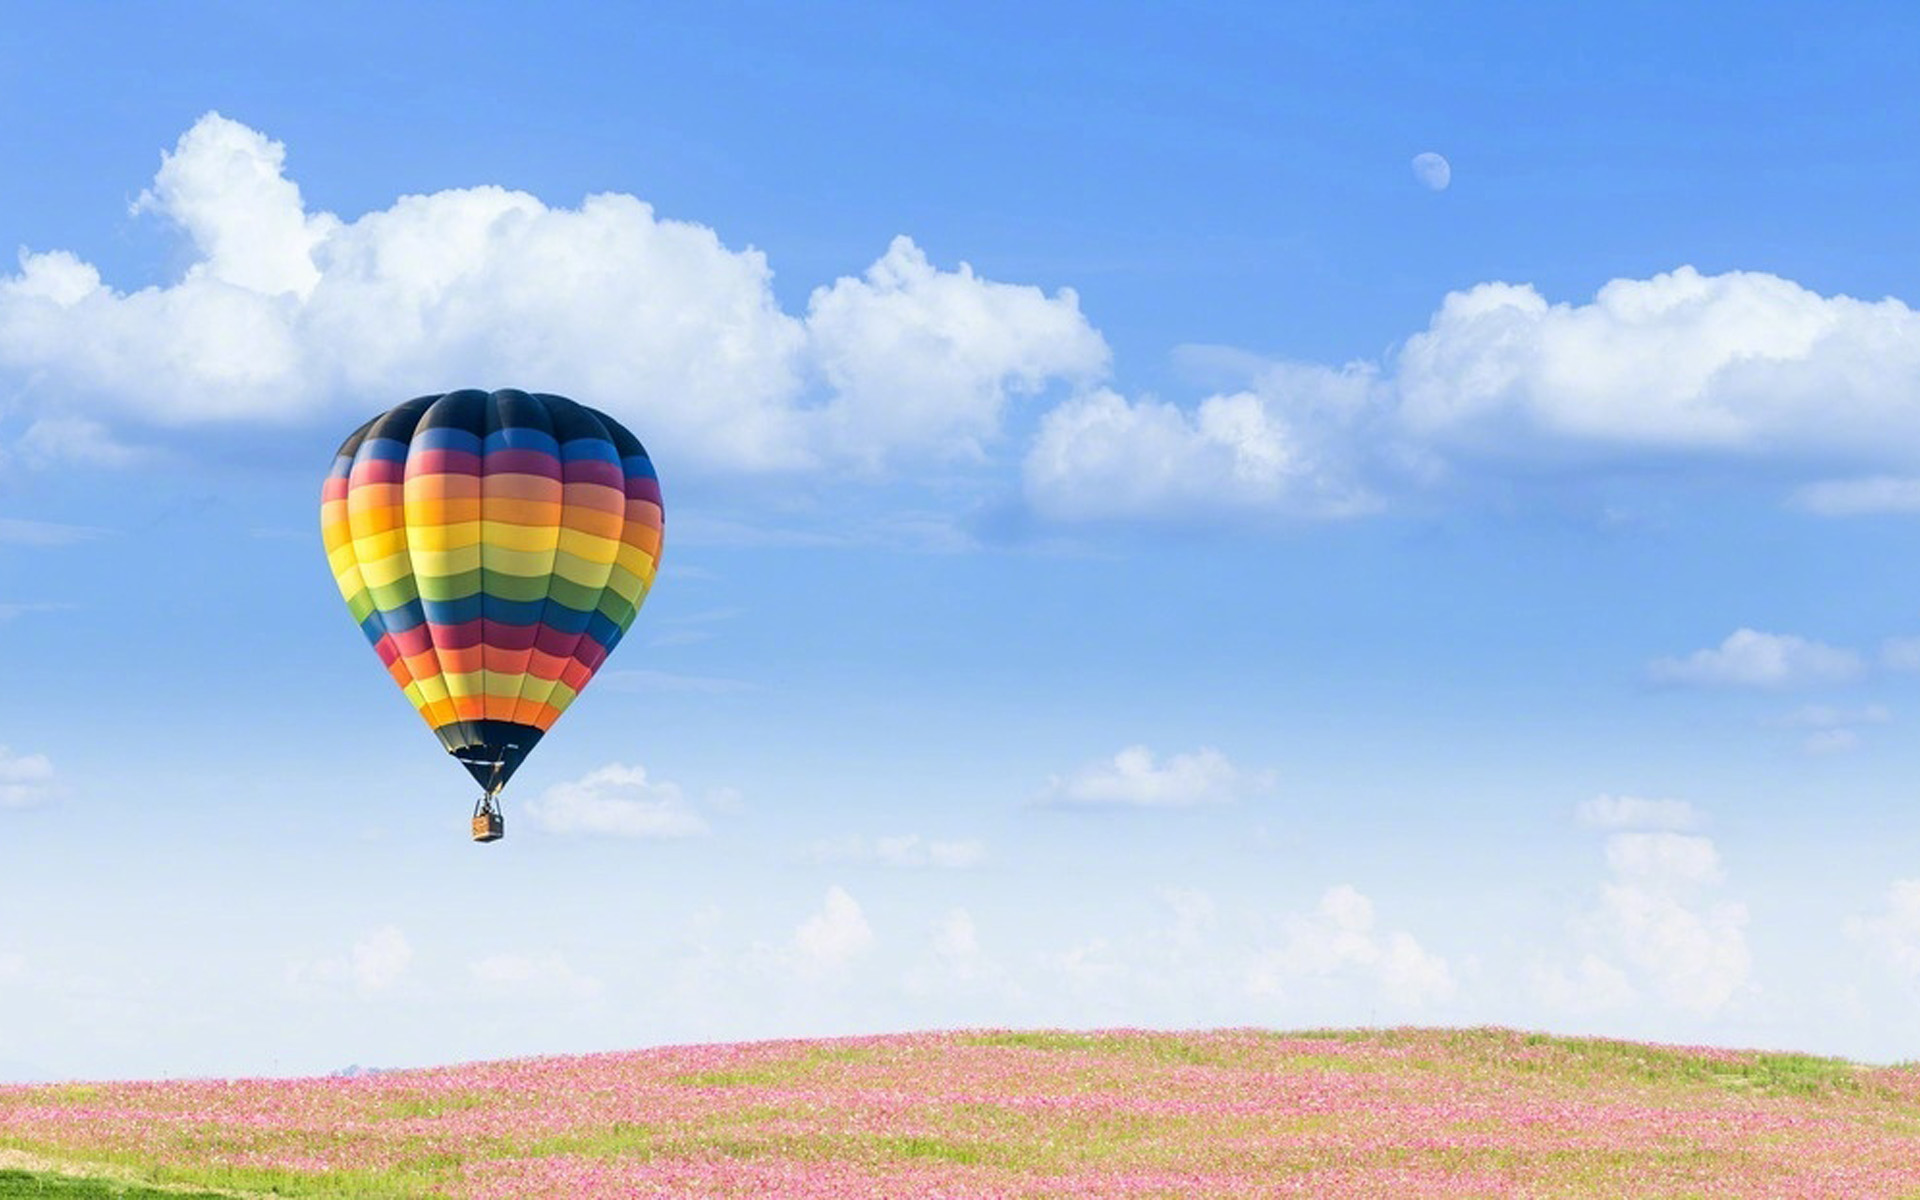 唯美热气球风景图片桌面壁纸,分辨率:1920x1200